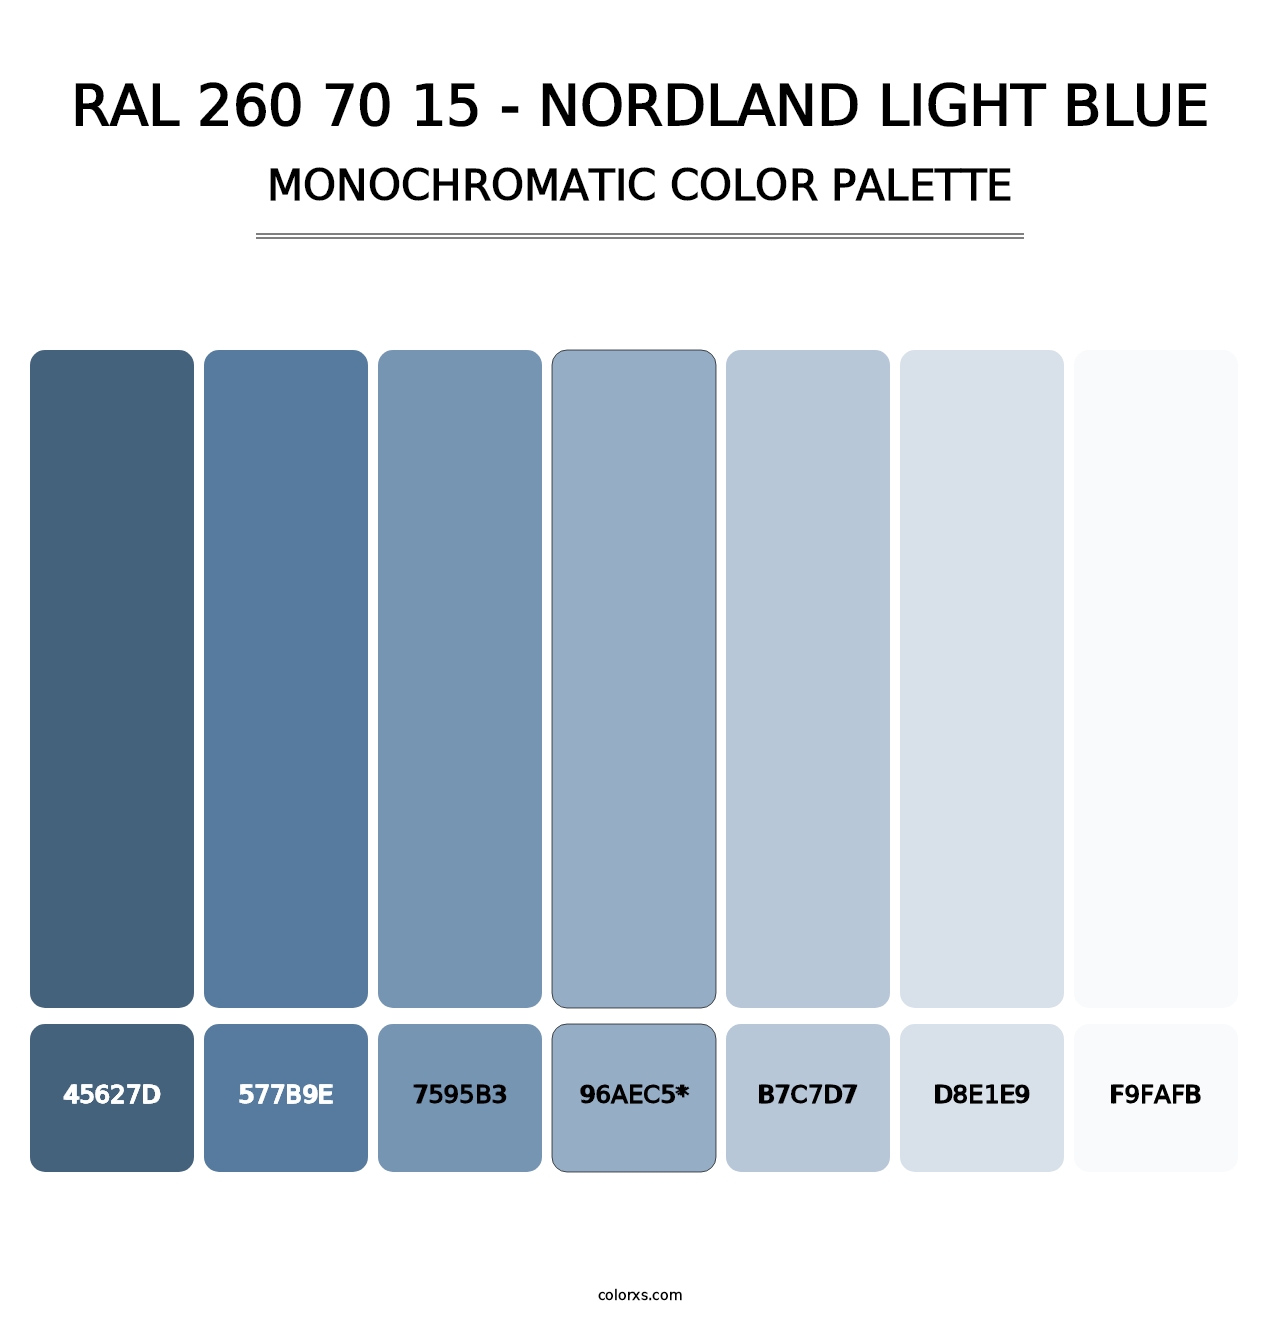 RAL 260 70 15 - Nordland Light Blue - Monochromatic Color Palette